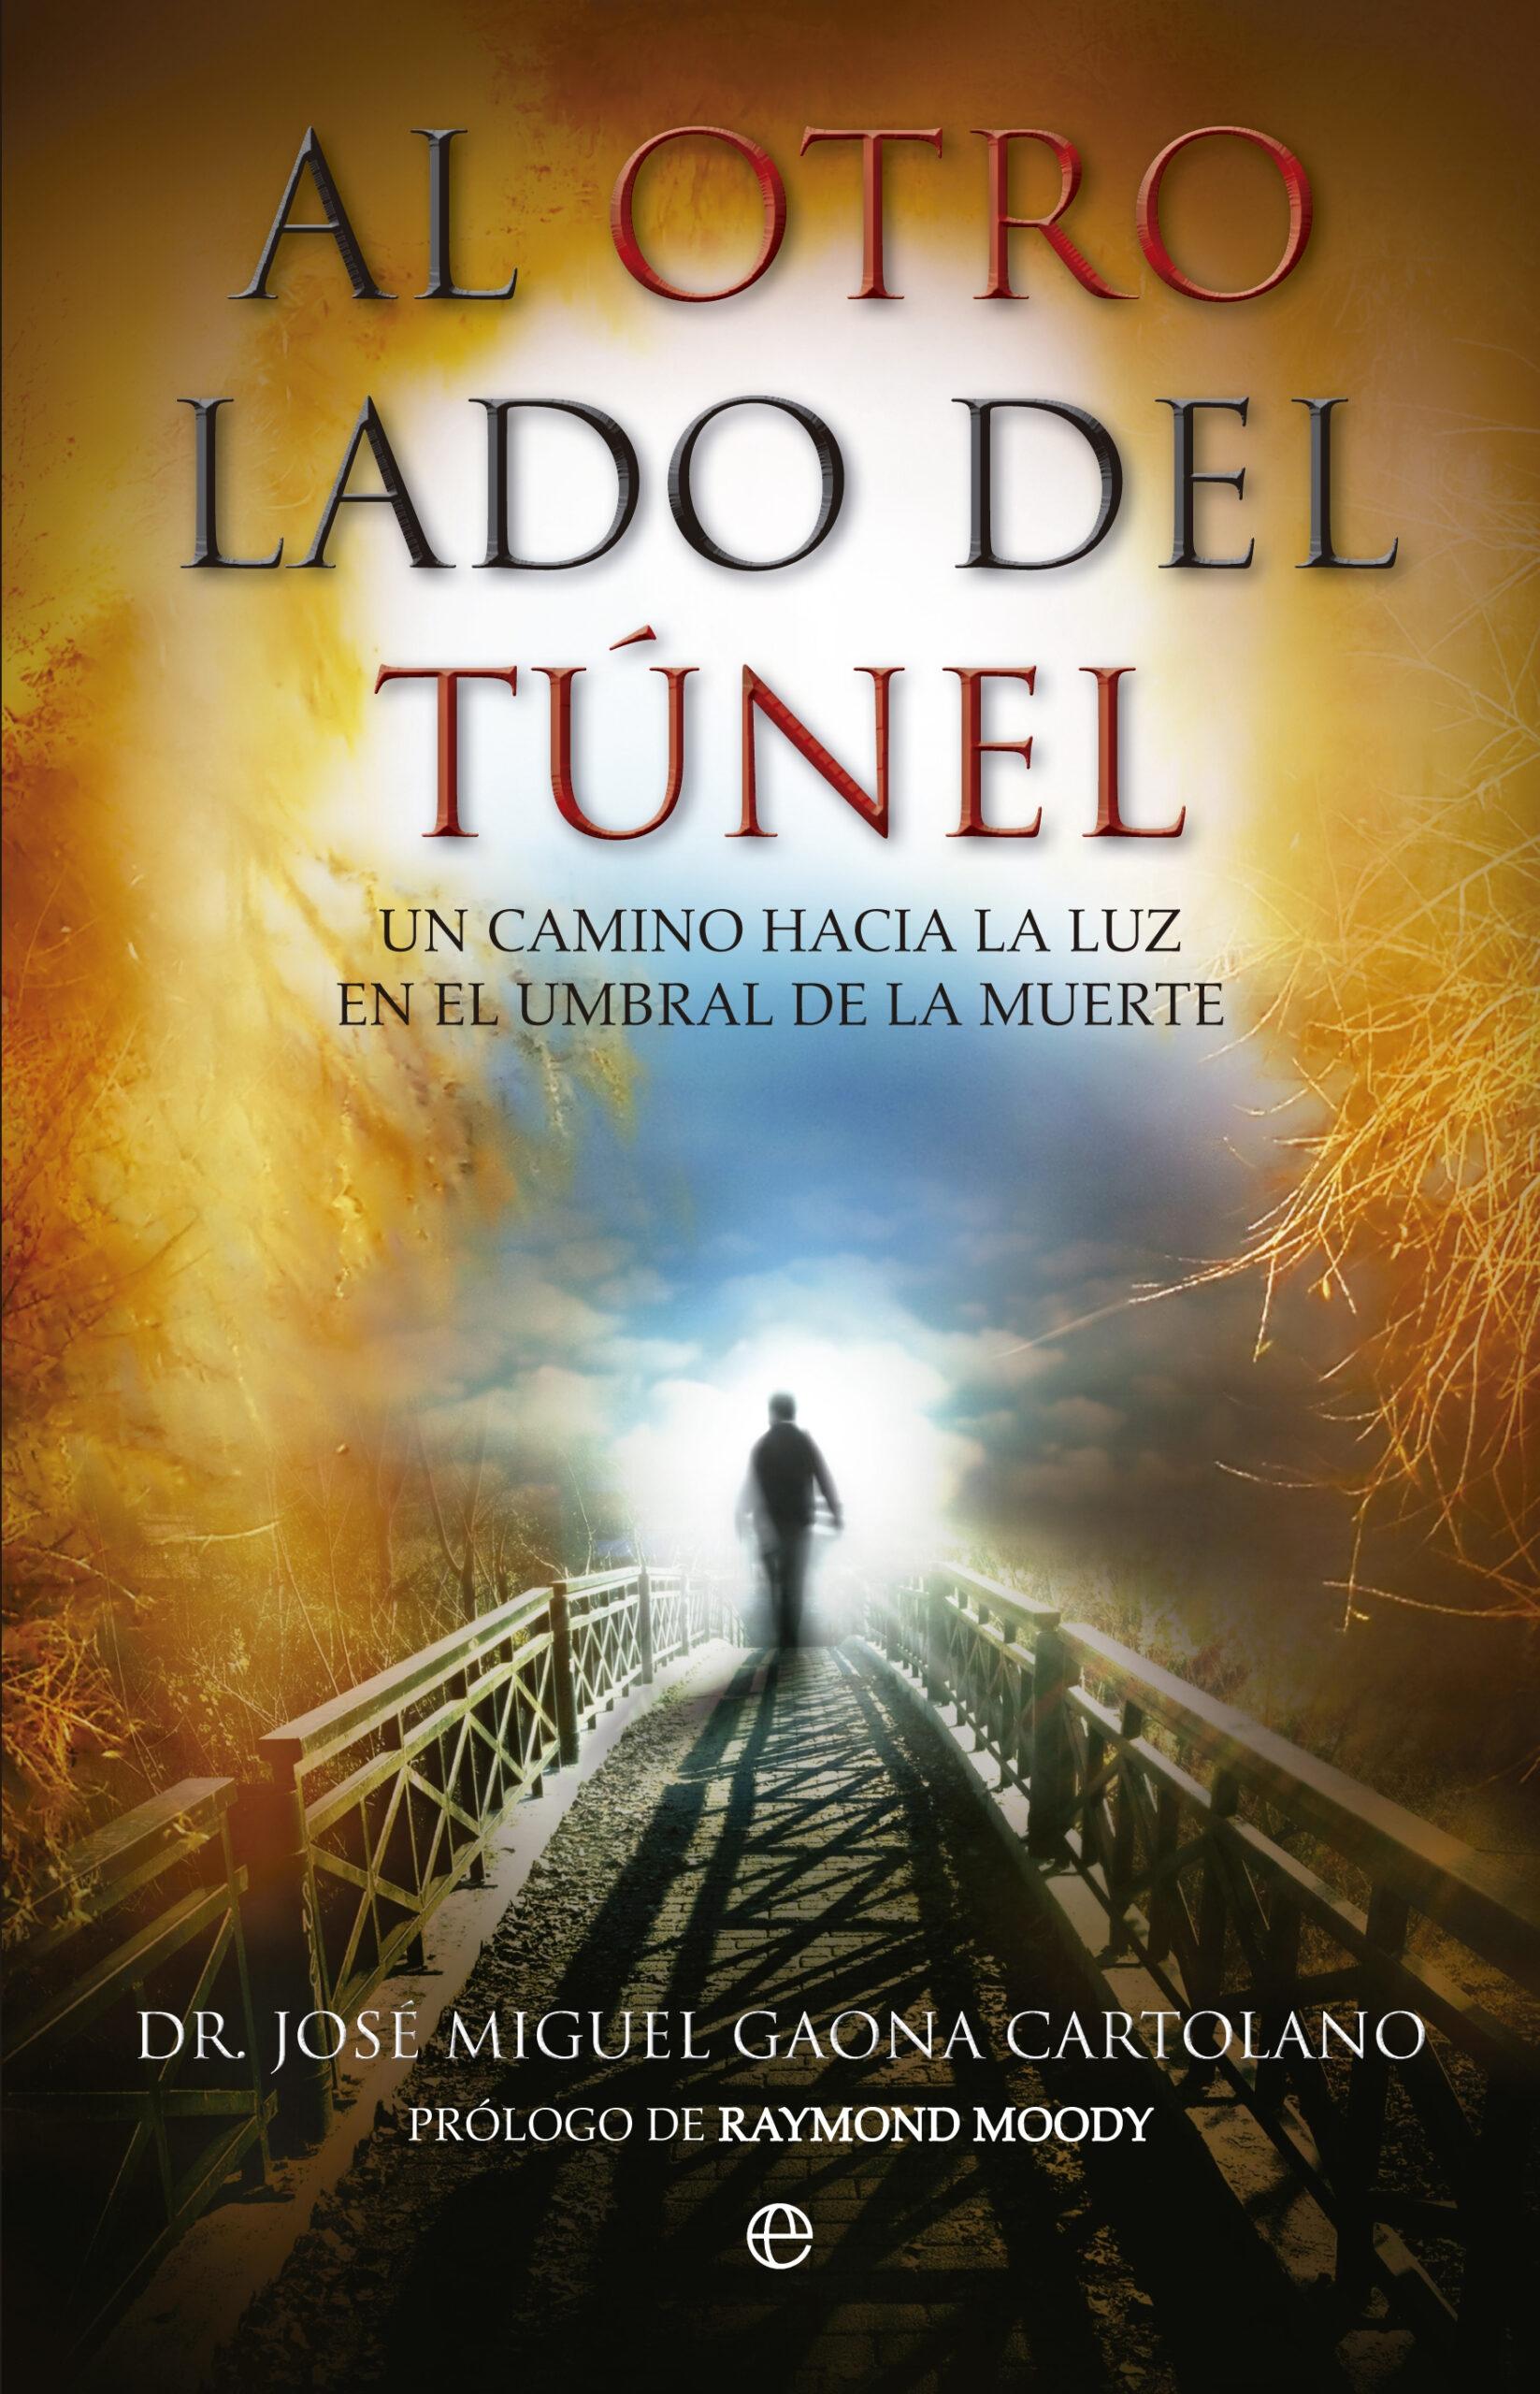 Al otro lado del túnel "Un camino hacia la luz en el umbral de la muerte"